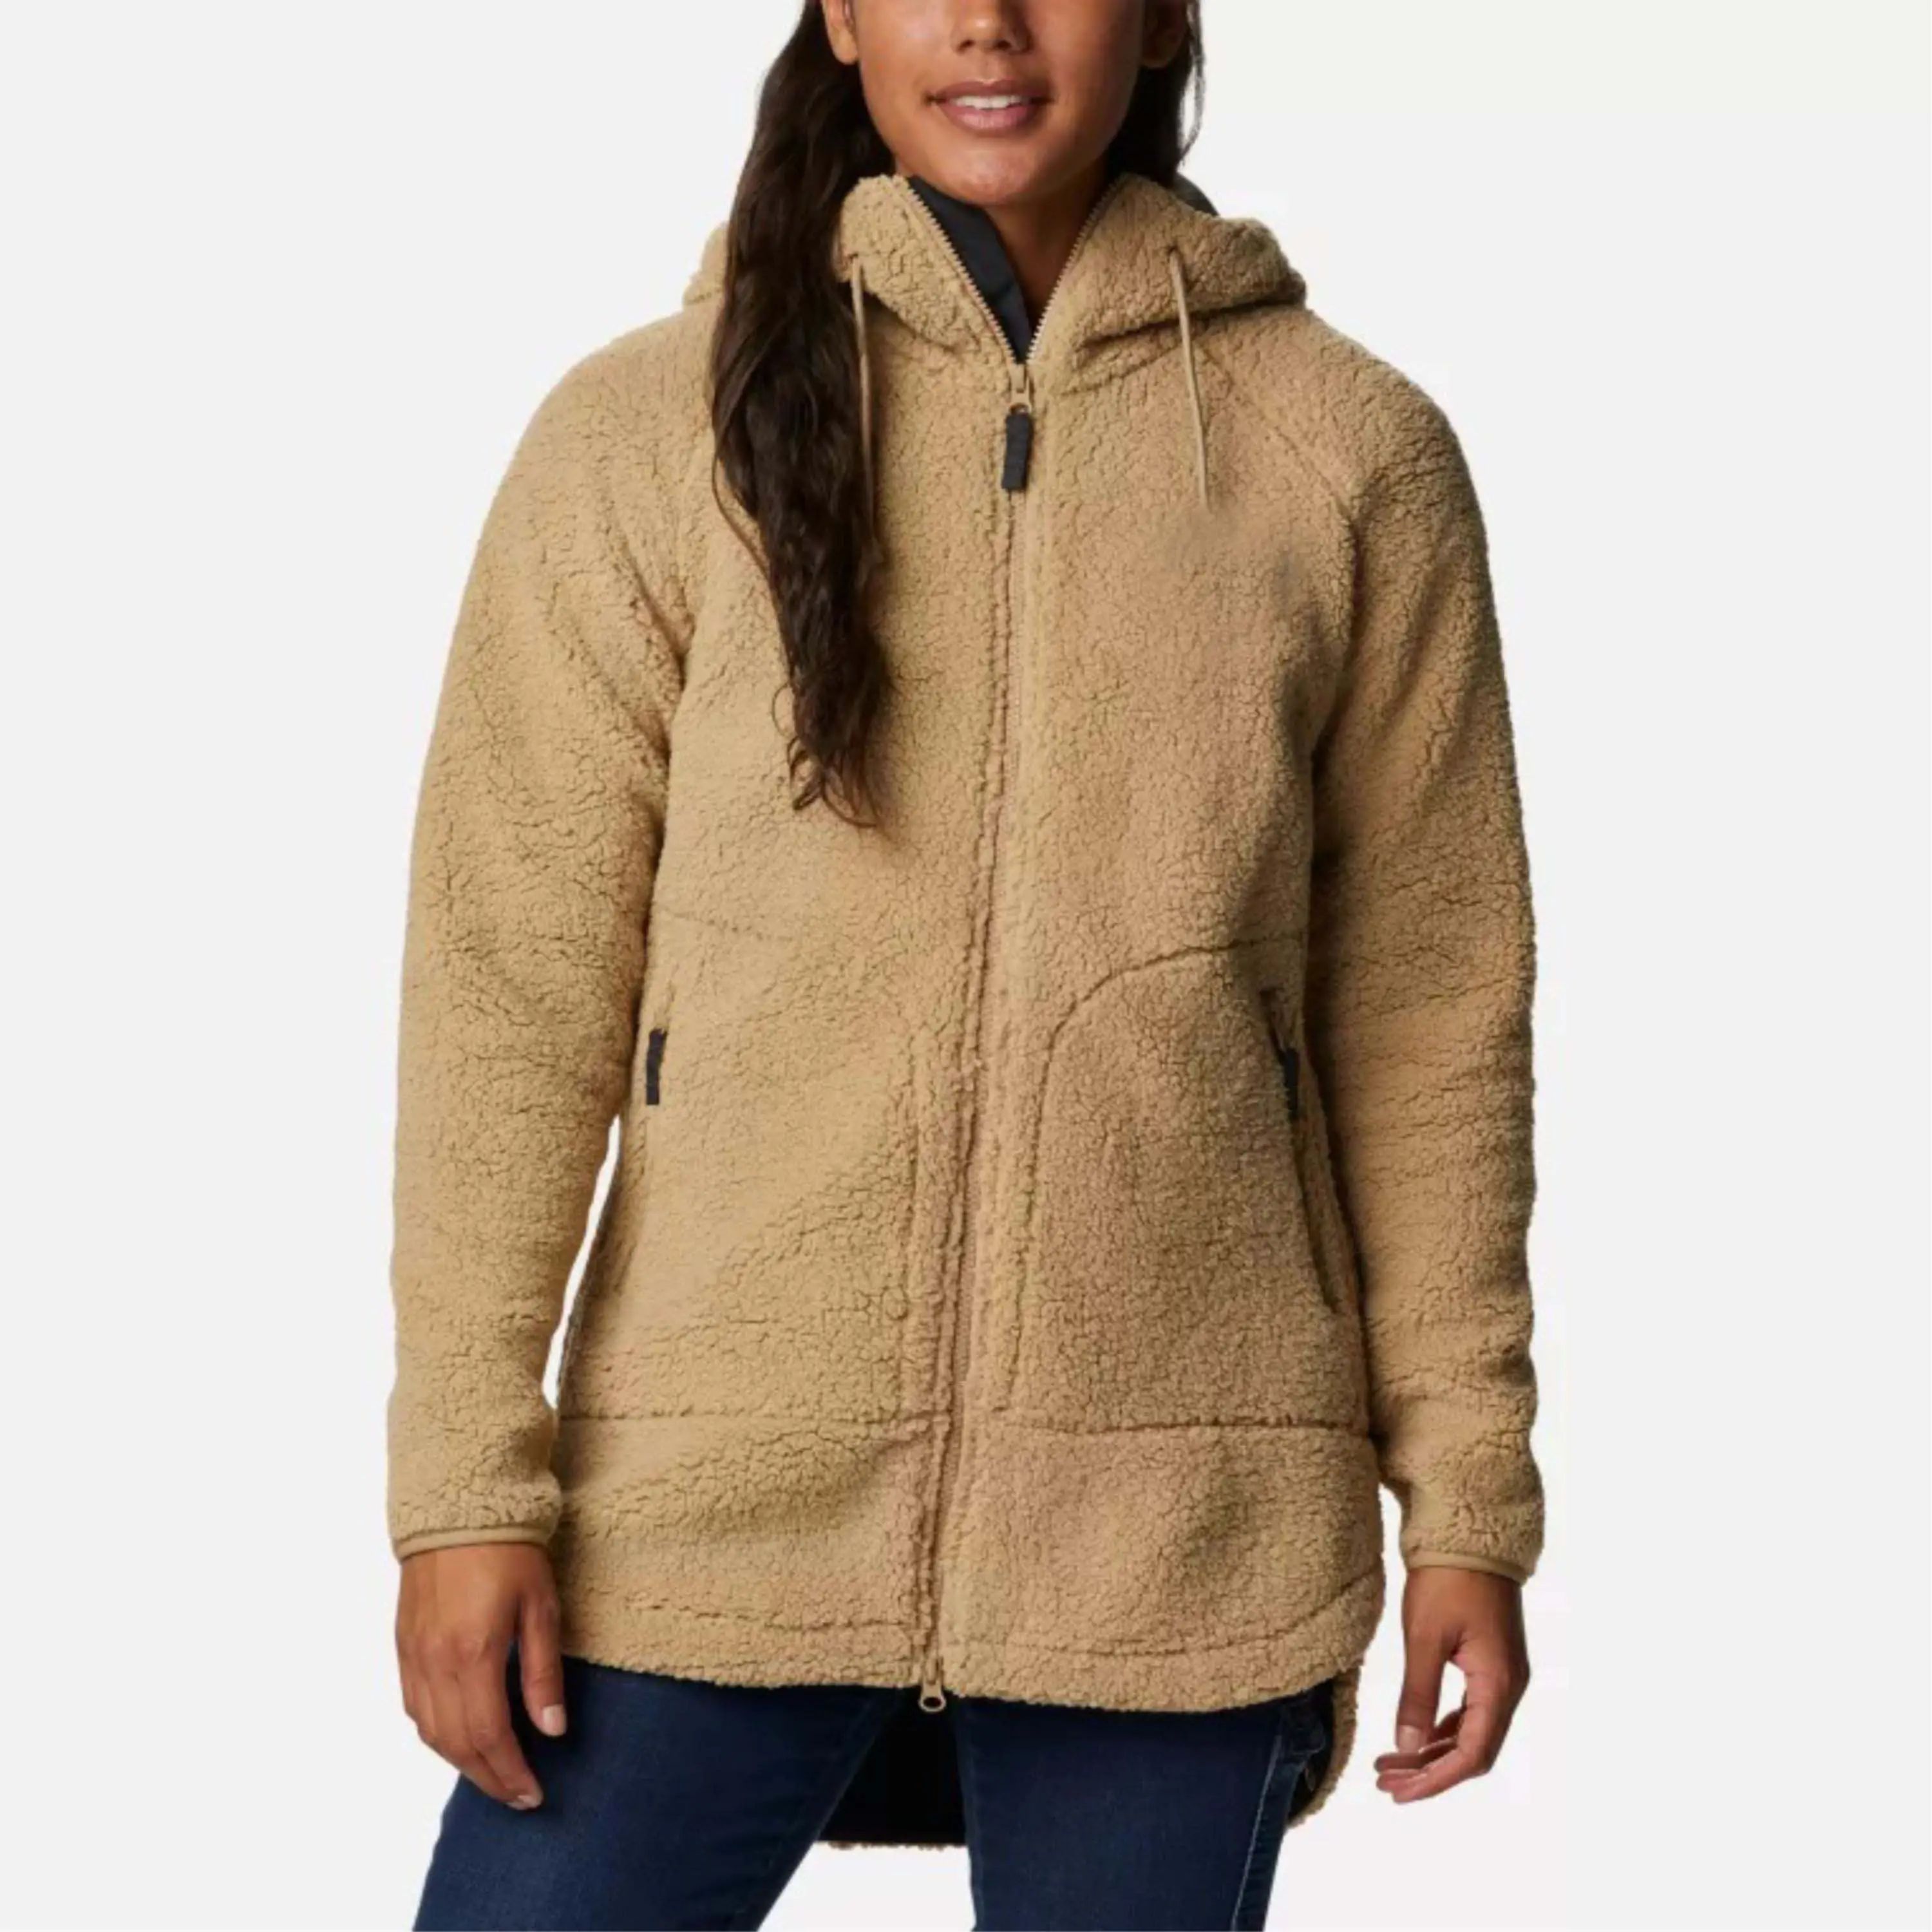 OEM individueller Hersteller Großhandel modisch Fleece Reißverschluss Damenjacken Damen stilvolle Sherpa-Fliesensacke